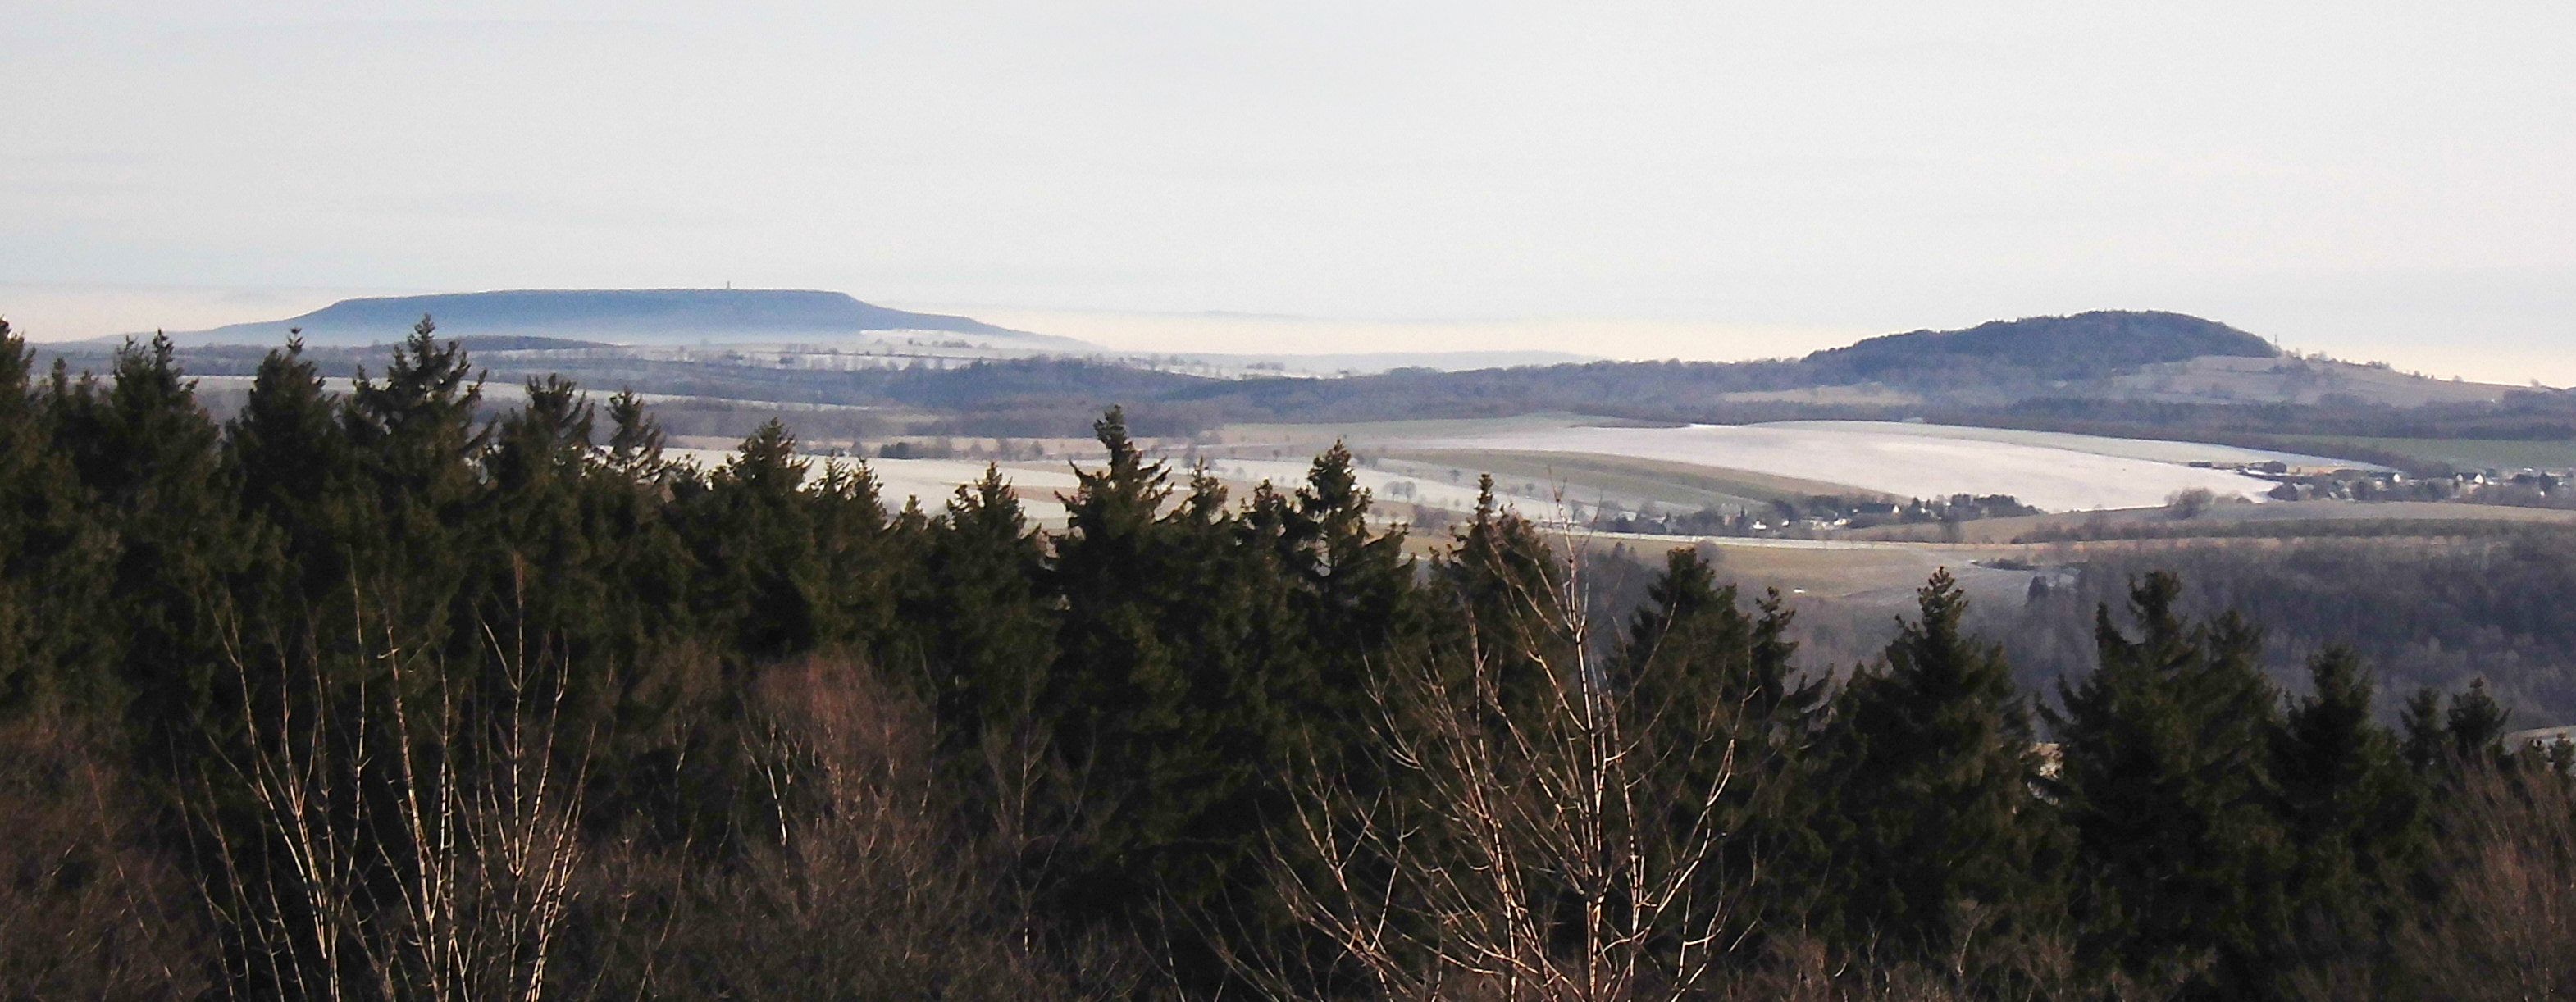 Panoramaweg - Blick zum Schneeberg